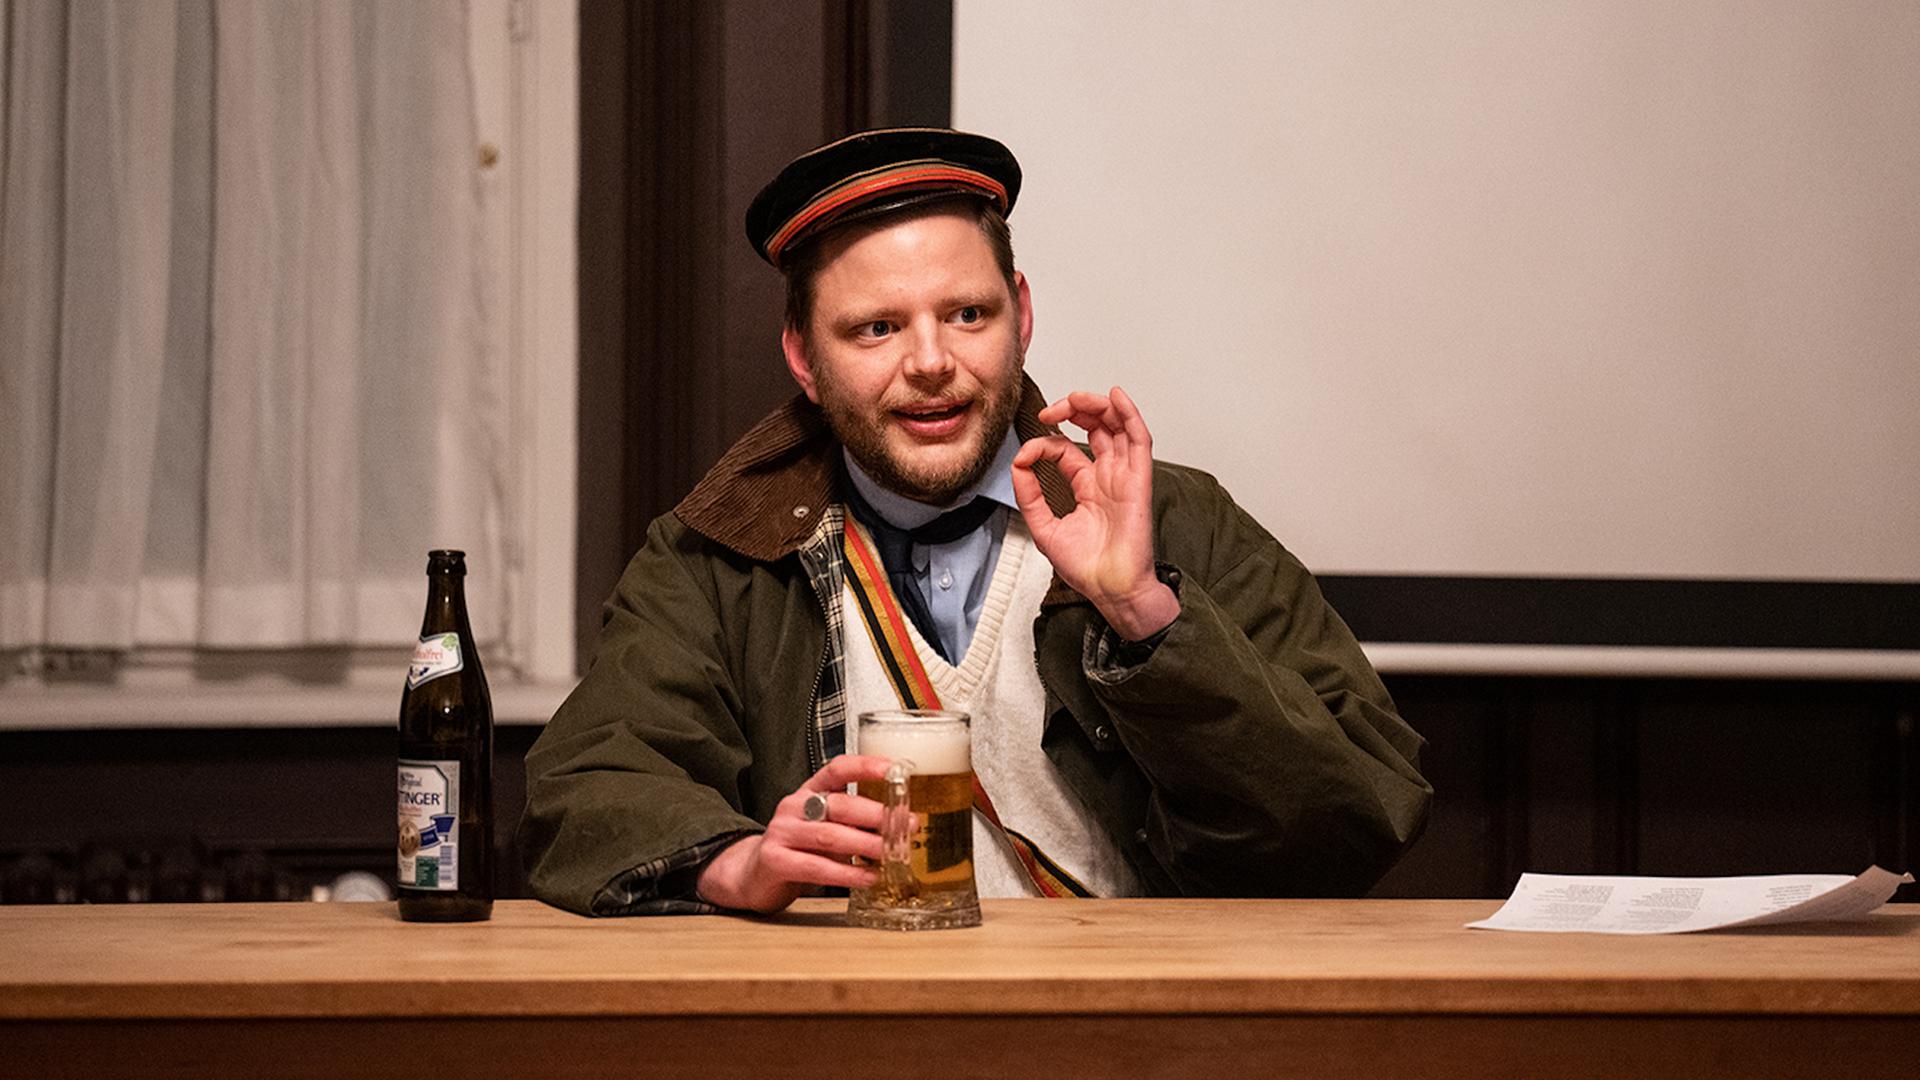 Im Bild aus der Inszenierung "saufen fechten heidelberg" sitzt ein Mann mit Uniformmütze an einem Tisch, hält ein Bierglas in der einen Hand und formt mit der anderen einen Ring aus Daumen und Zeigefinger.